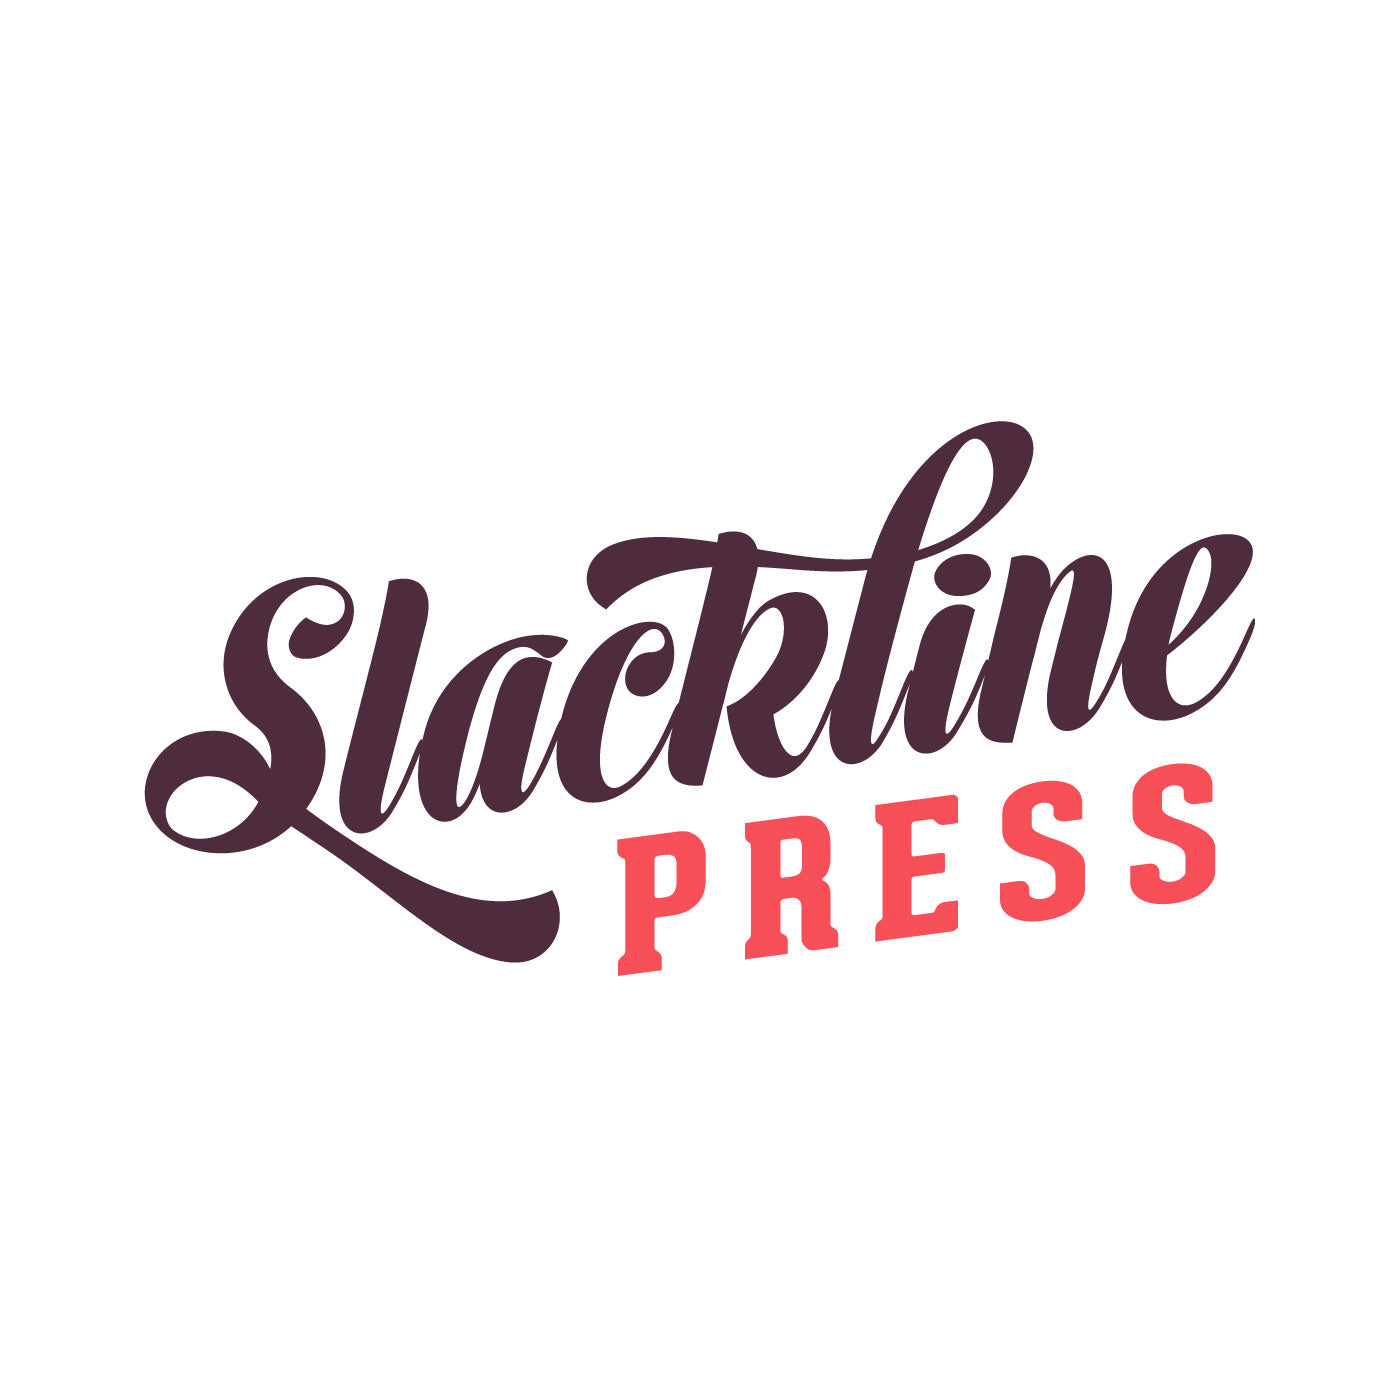 Slackline Press